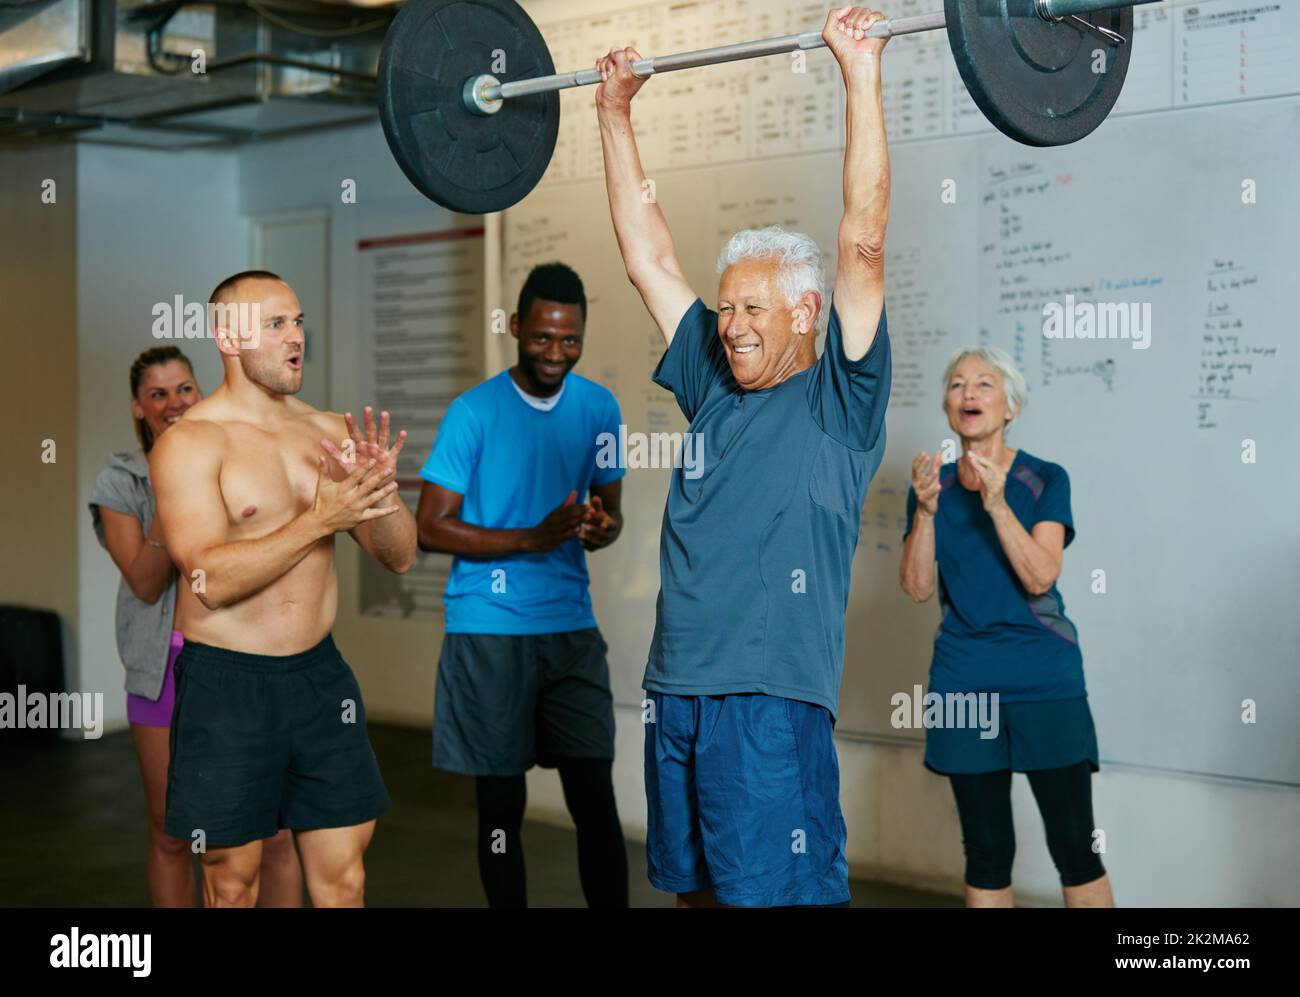 Unmöglich ist nichts. Aufnahme eines älteren Mannes, der Gewichte hebt, während eine Gruppe von Personen im Hintergrund zusehen. Stockfoto